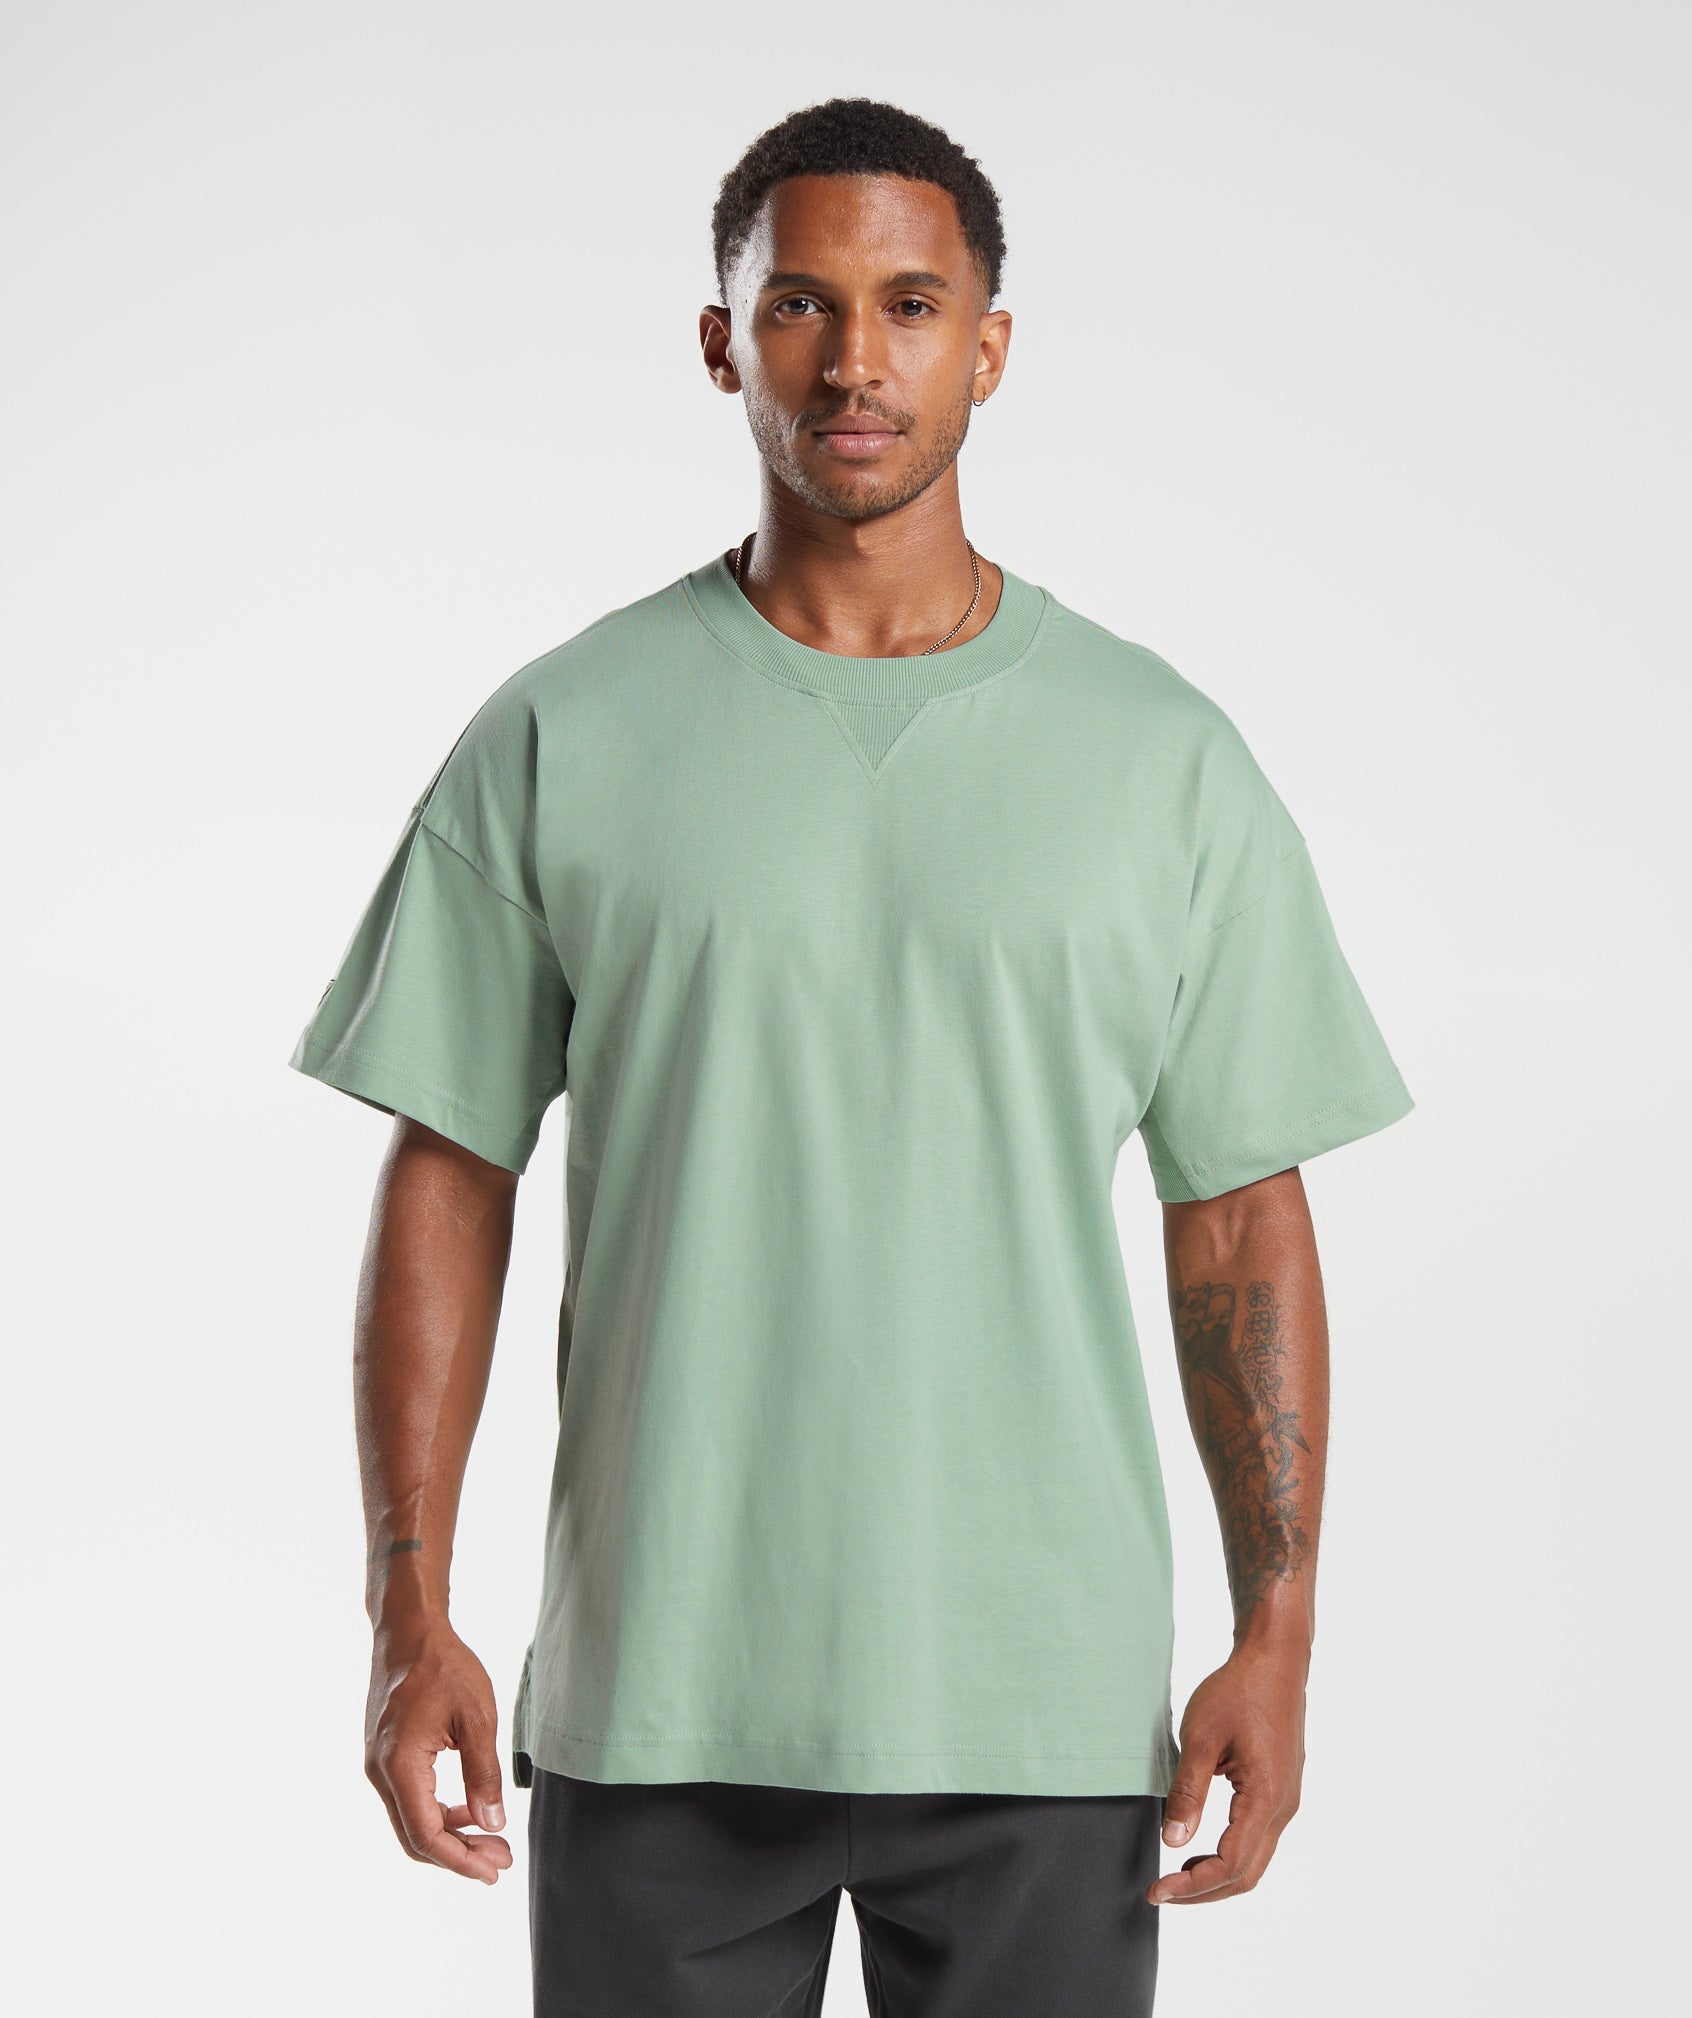 Gymshark Rest Day Essentials T-shirt - Desert Sage Green